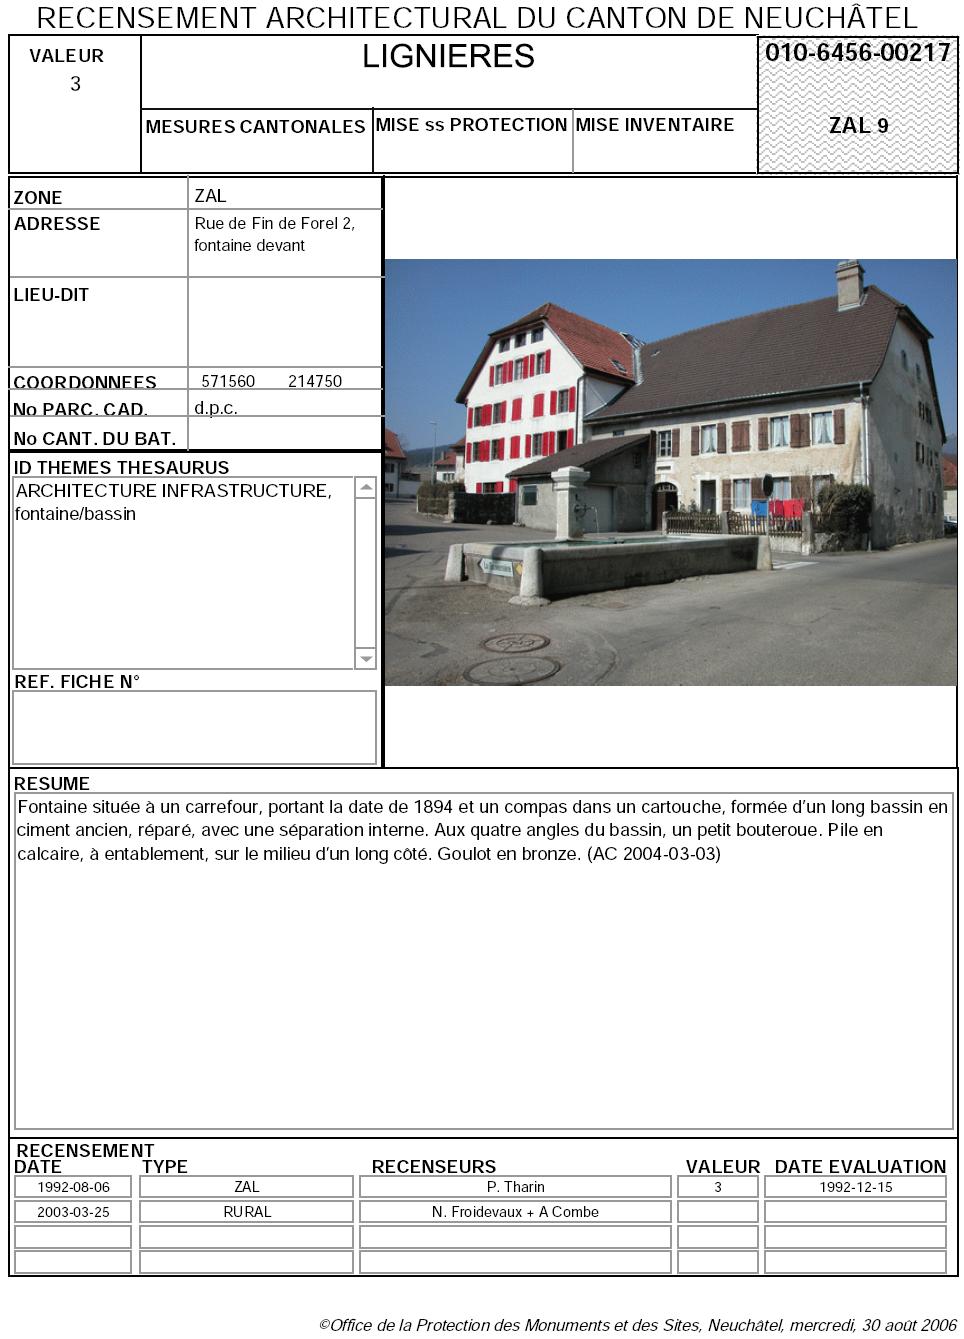 Recensement architectural du canton de Neuchâtel: Fiche 010-6456-00217